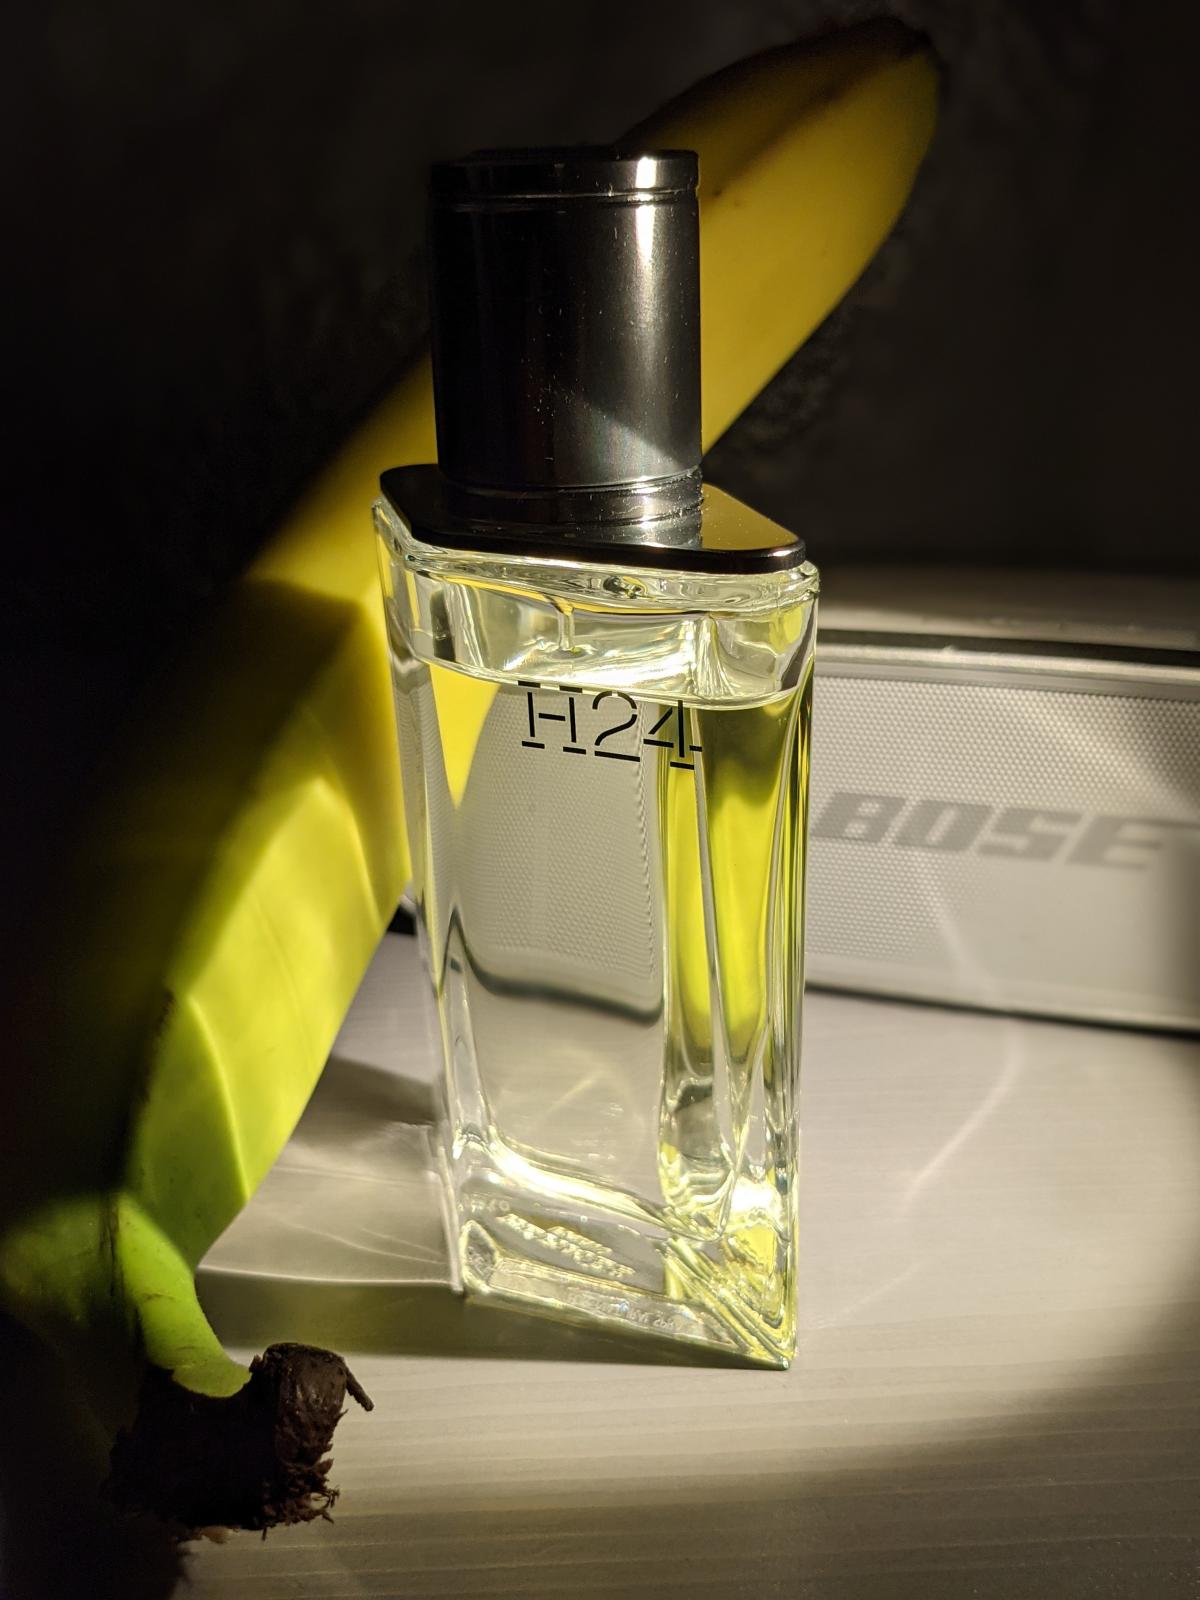 H24 Hermès cologne - a fragrance for men 2021